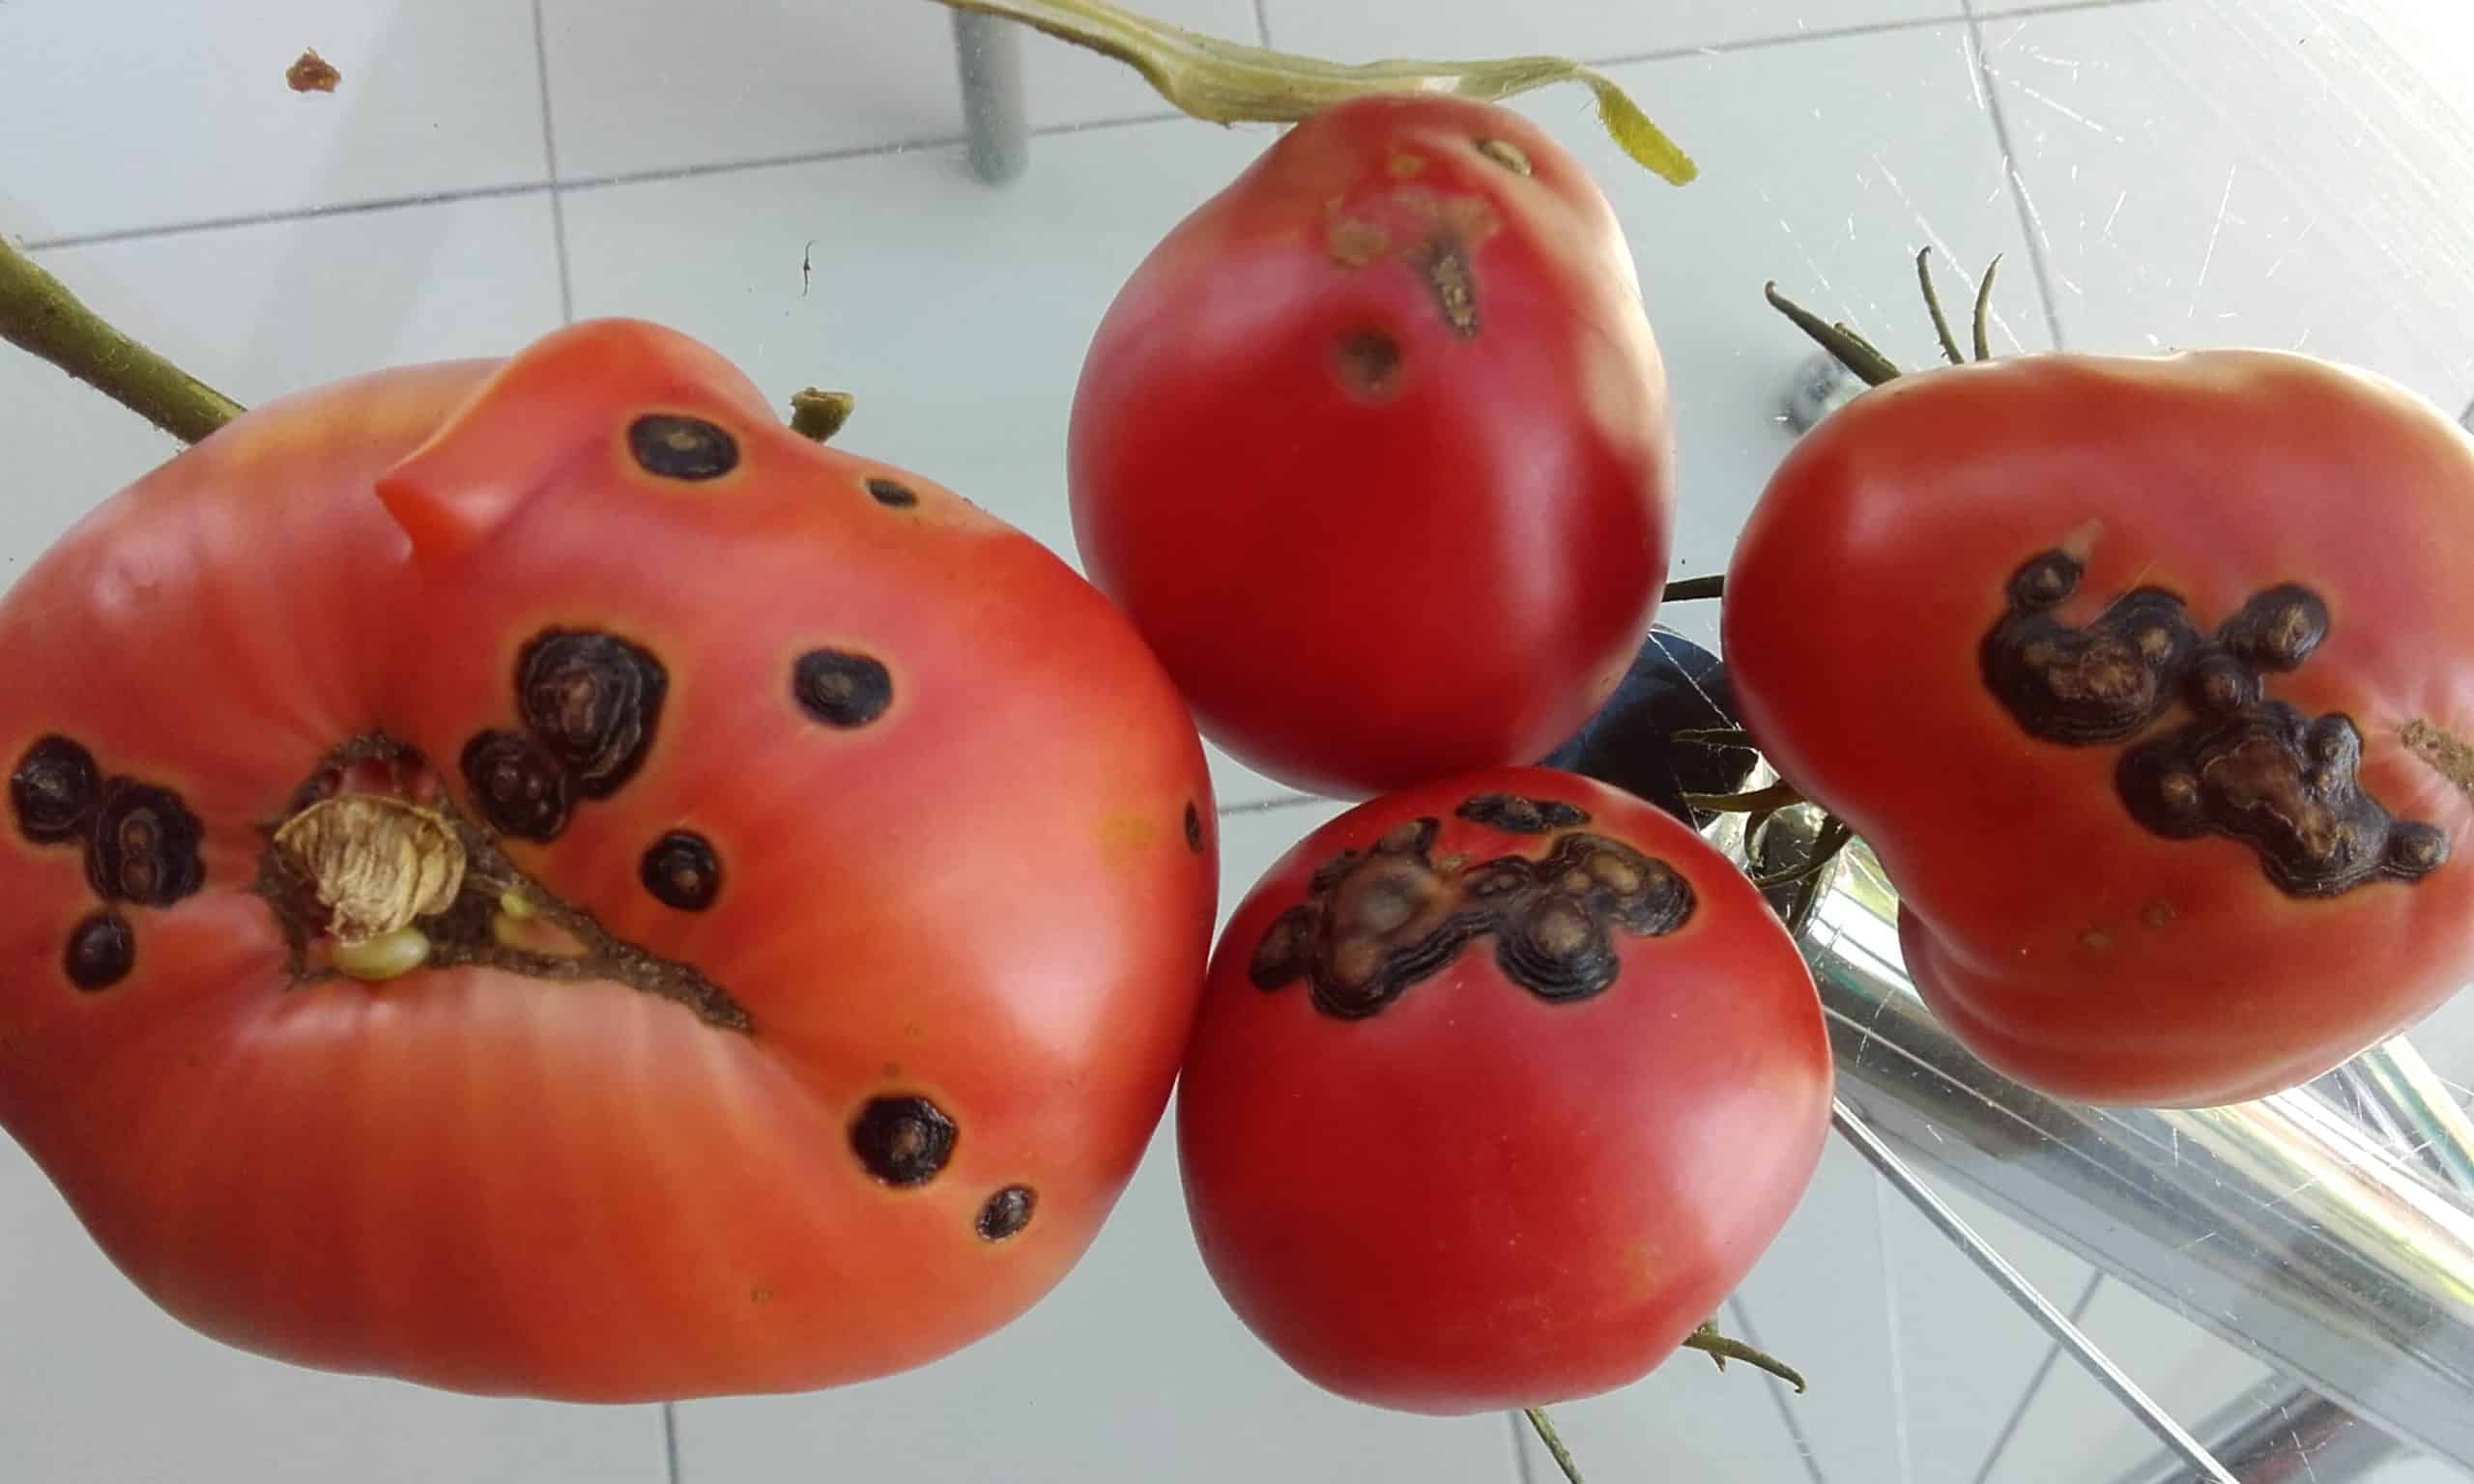 Des taches noires sur les tomates